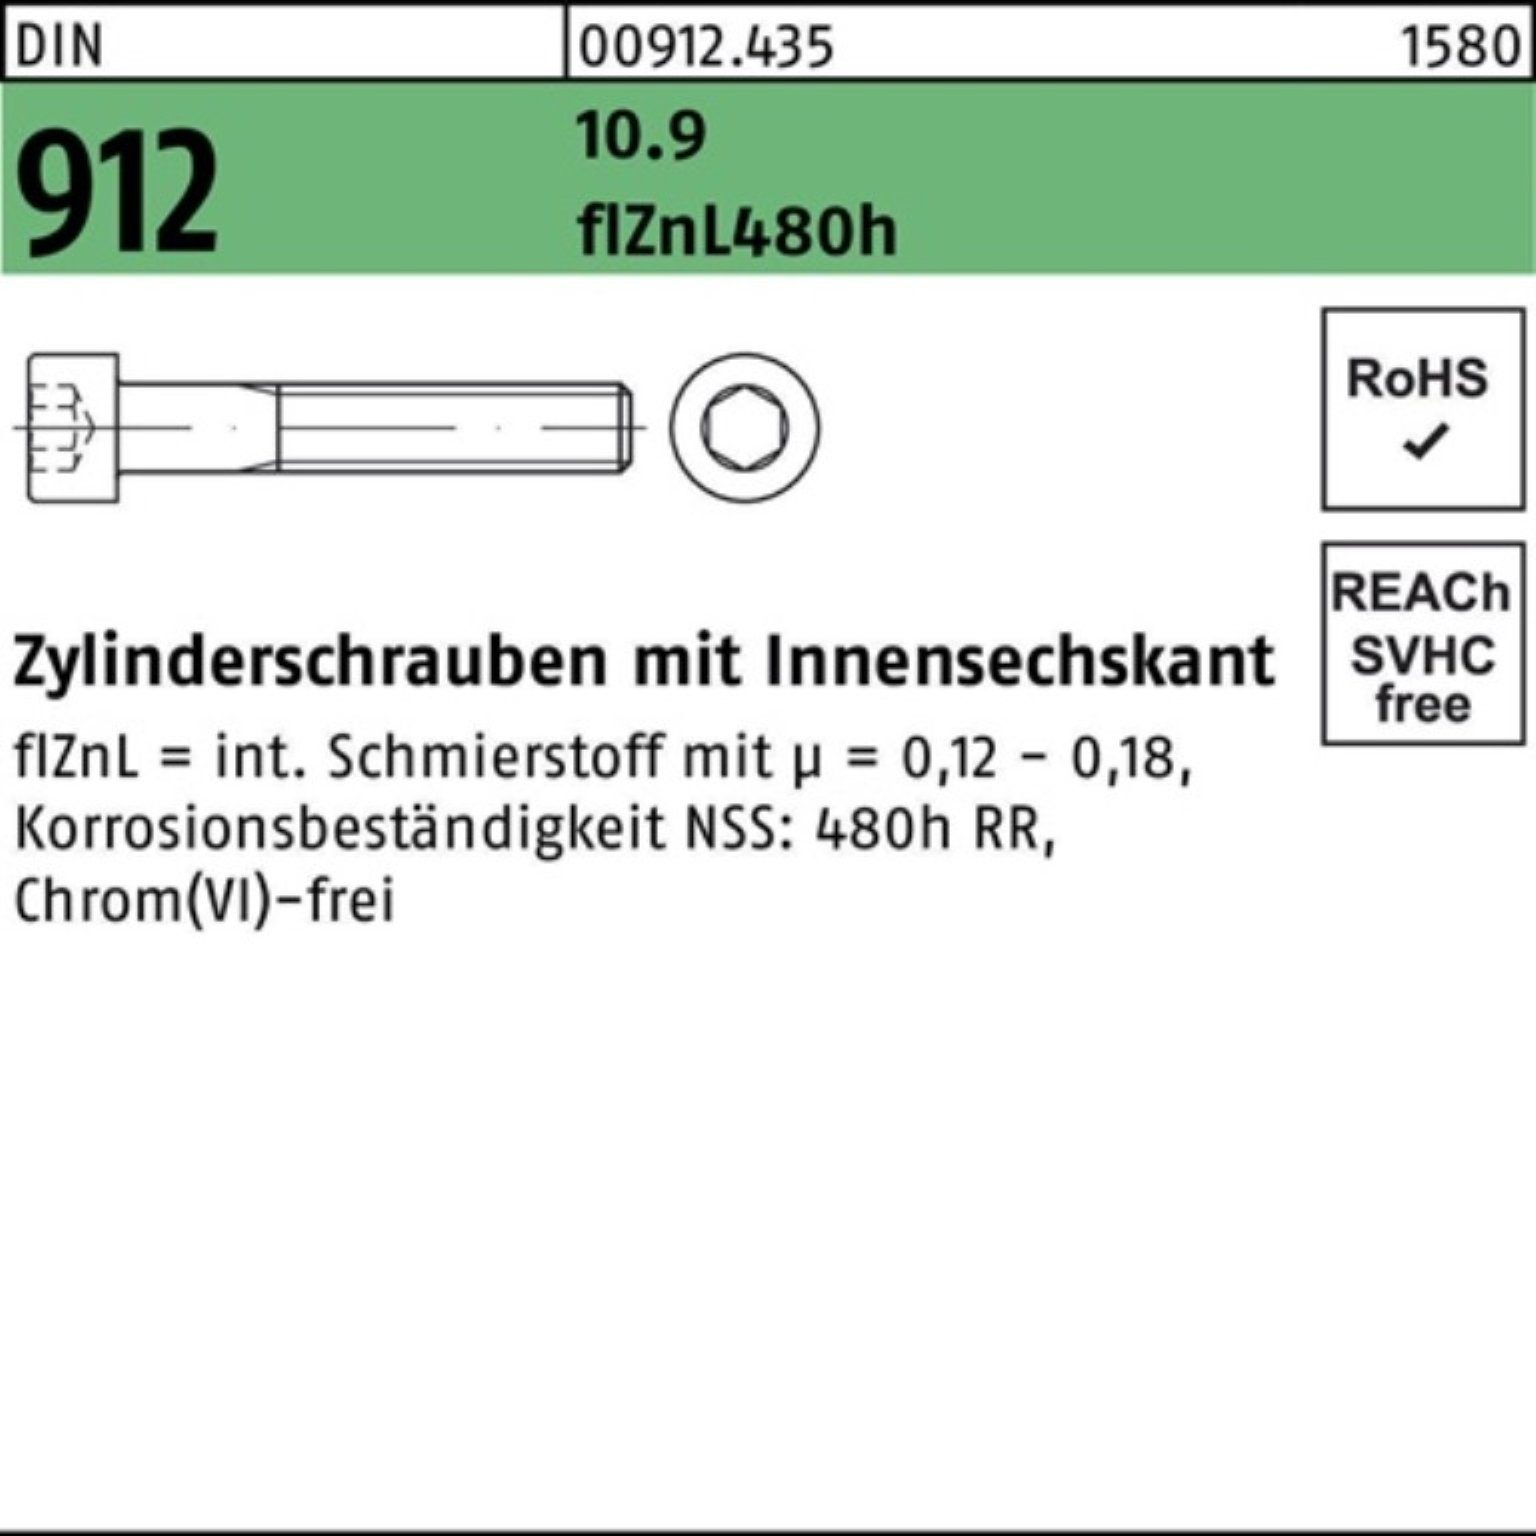 Reyher Zylinderschraube 100er 912 M12x90 flZnL/nc/x/x Pack Innen-6kt Zylinderschraube 10.9 DIN